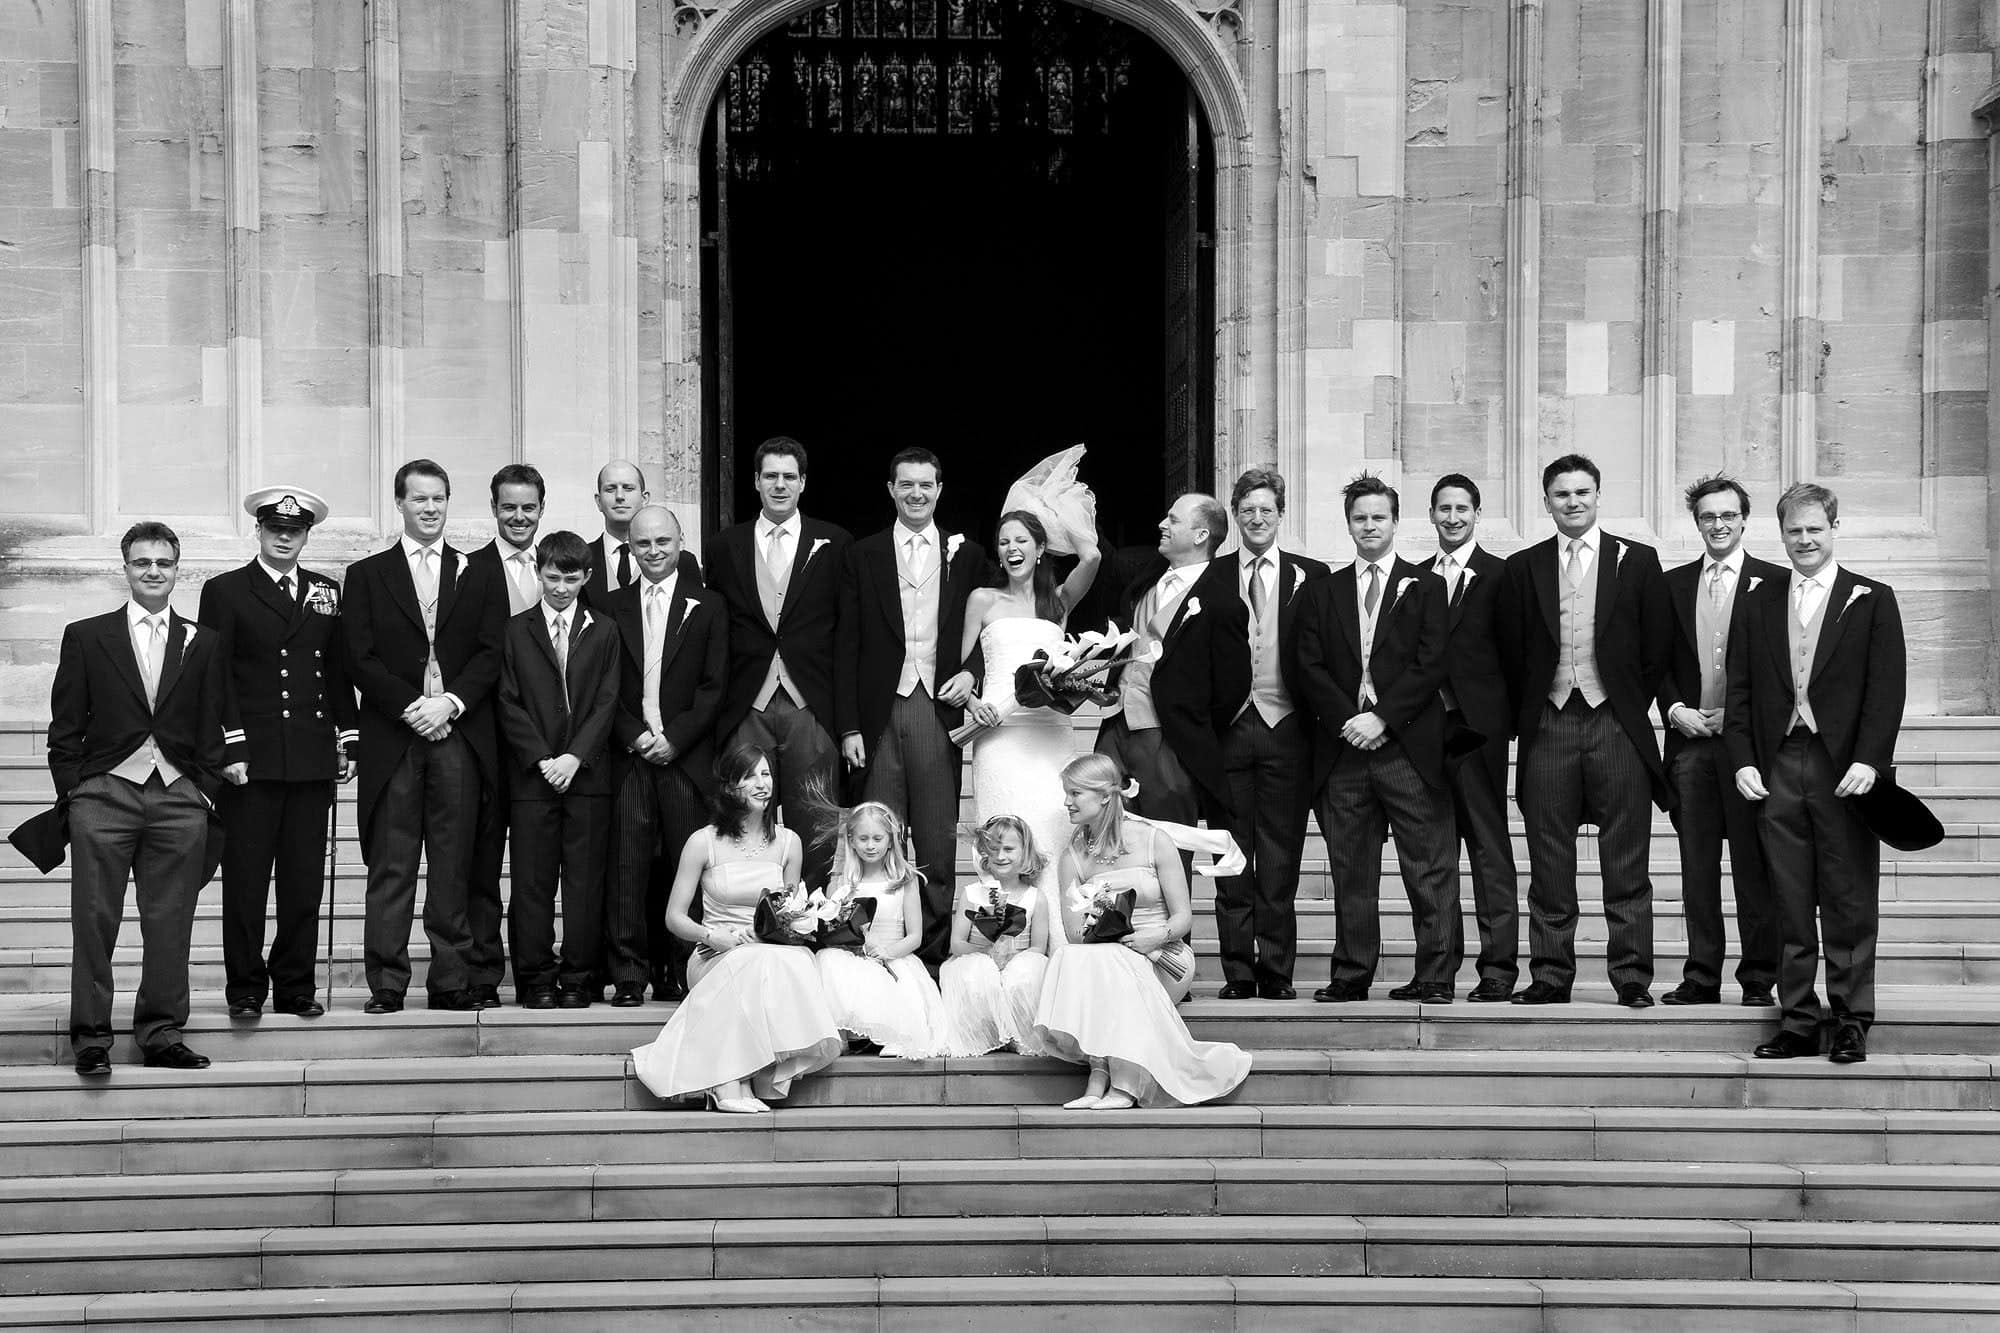 Windsor Castle wedding photographer